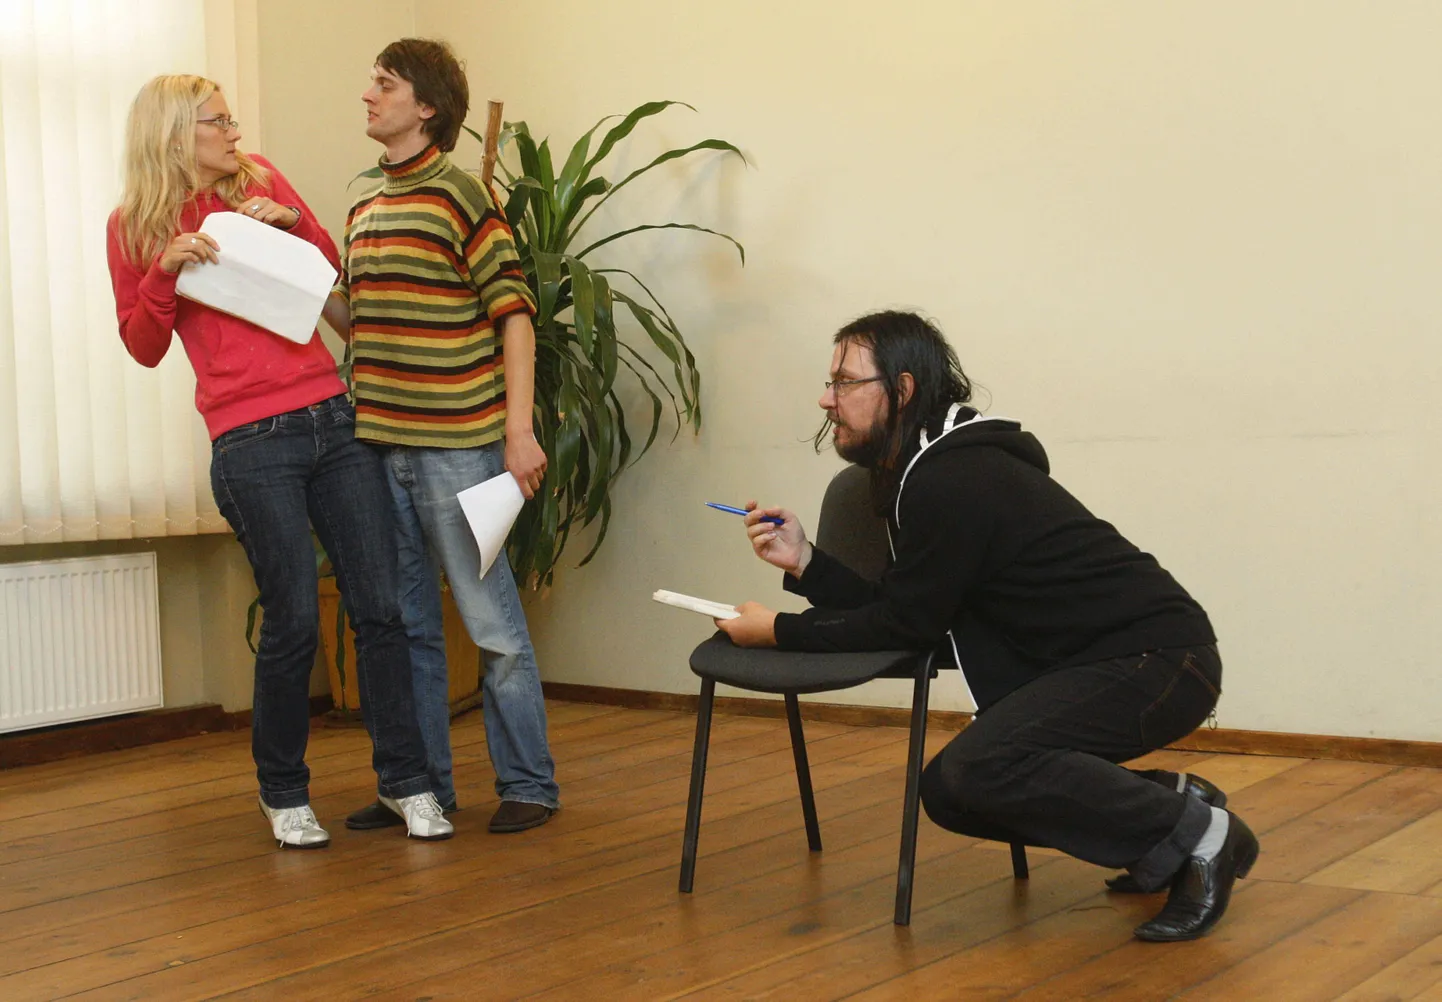 Pildistatud laupäeval, 26. septembril 2009.
Tartu Üliõpilasteatri kümnendaks aastapäevaks valmistatakse ette galaetendust (pildil lavastaja Kalev Kudu (paremalt), Anne Roovere ja Martin Liira).